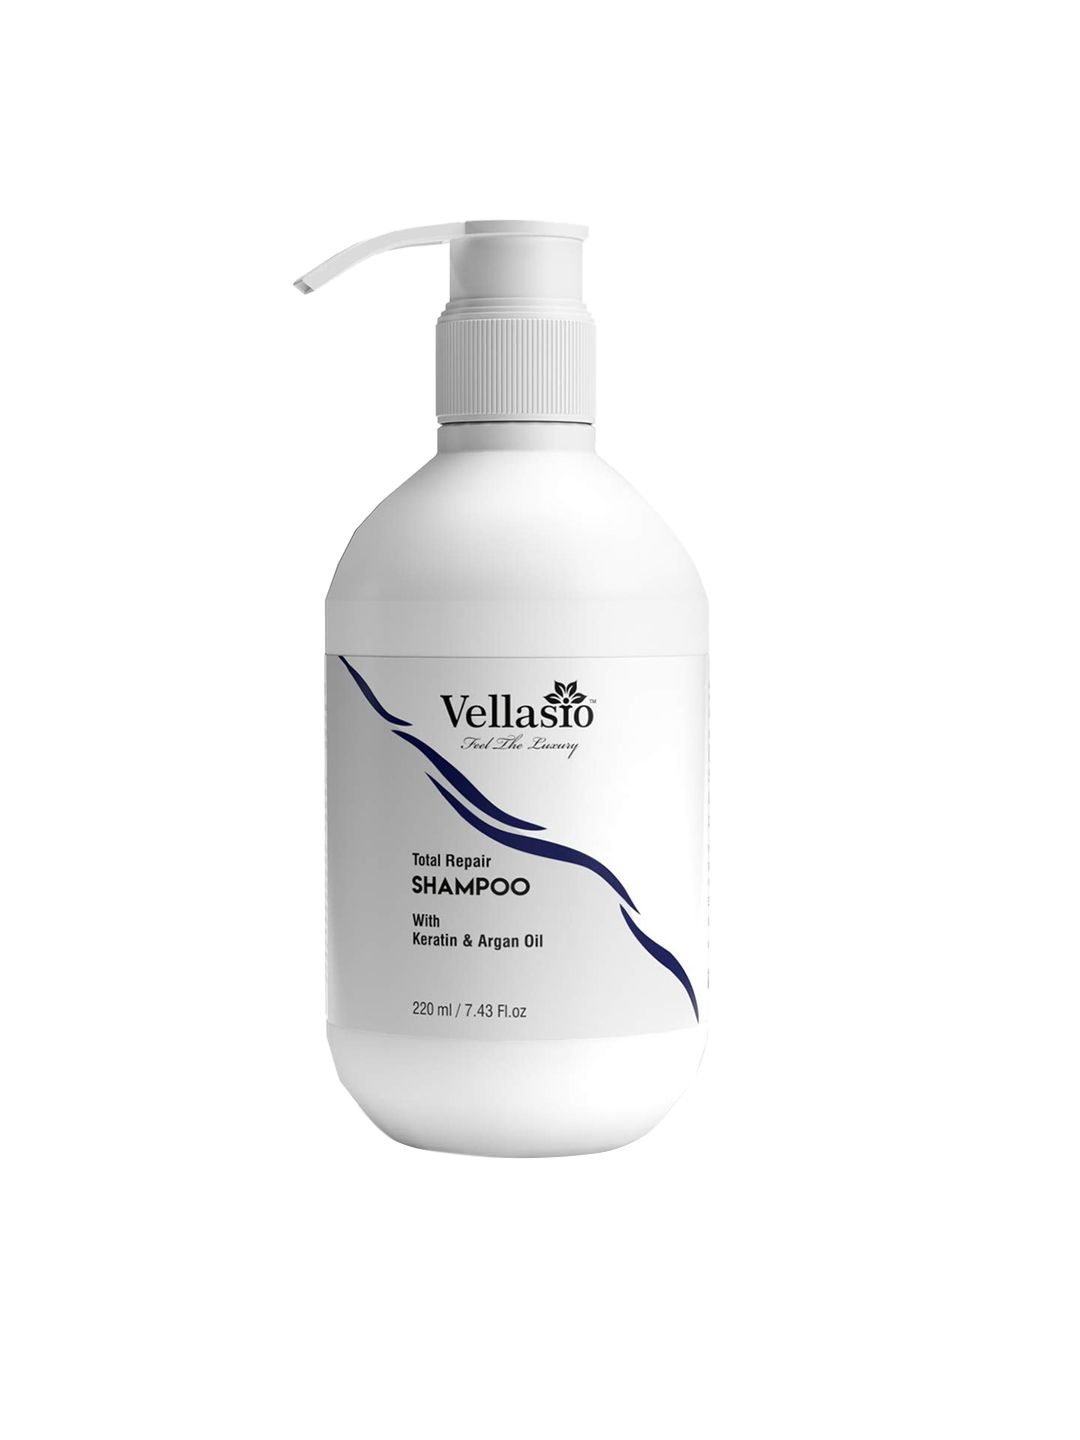 Vellasio Keratin & Argan Oil Total Hair Repair Shampoo - 220 ml Price in India